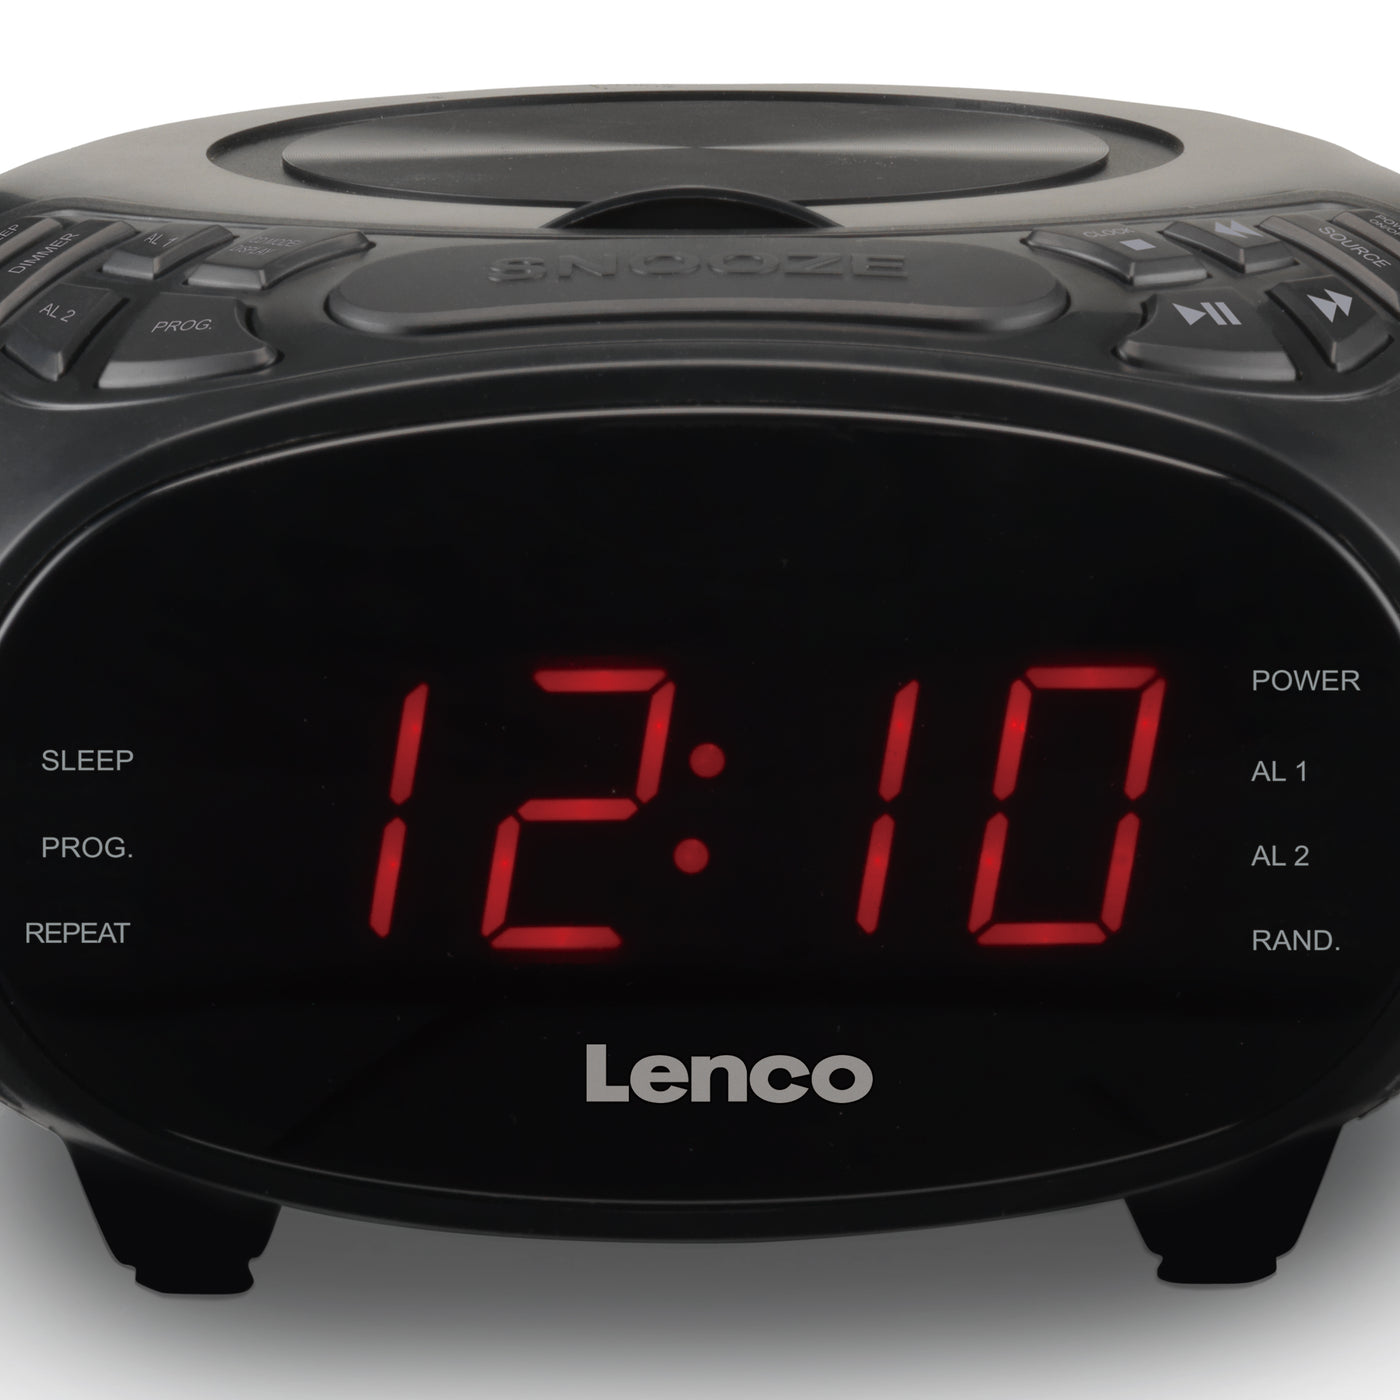 LENCO CR-740BK - Radiobudzik stereofoniczny FM z odtwarzaczem CD - Czarny